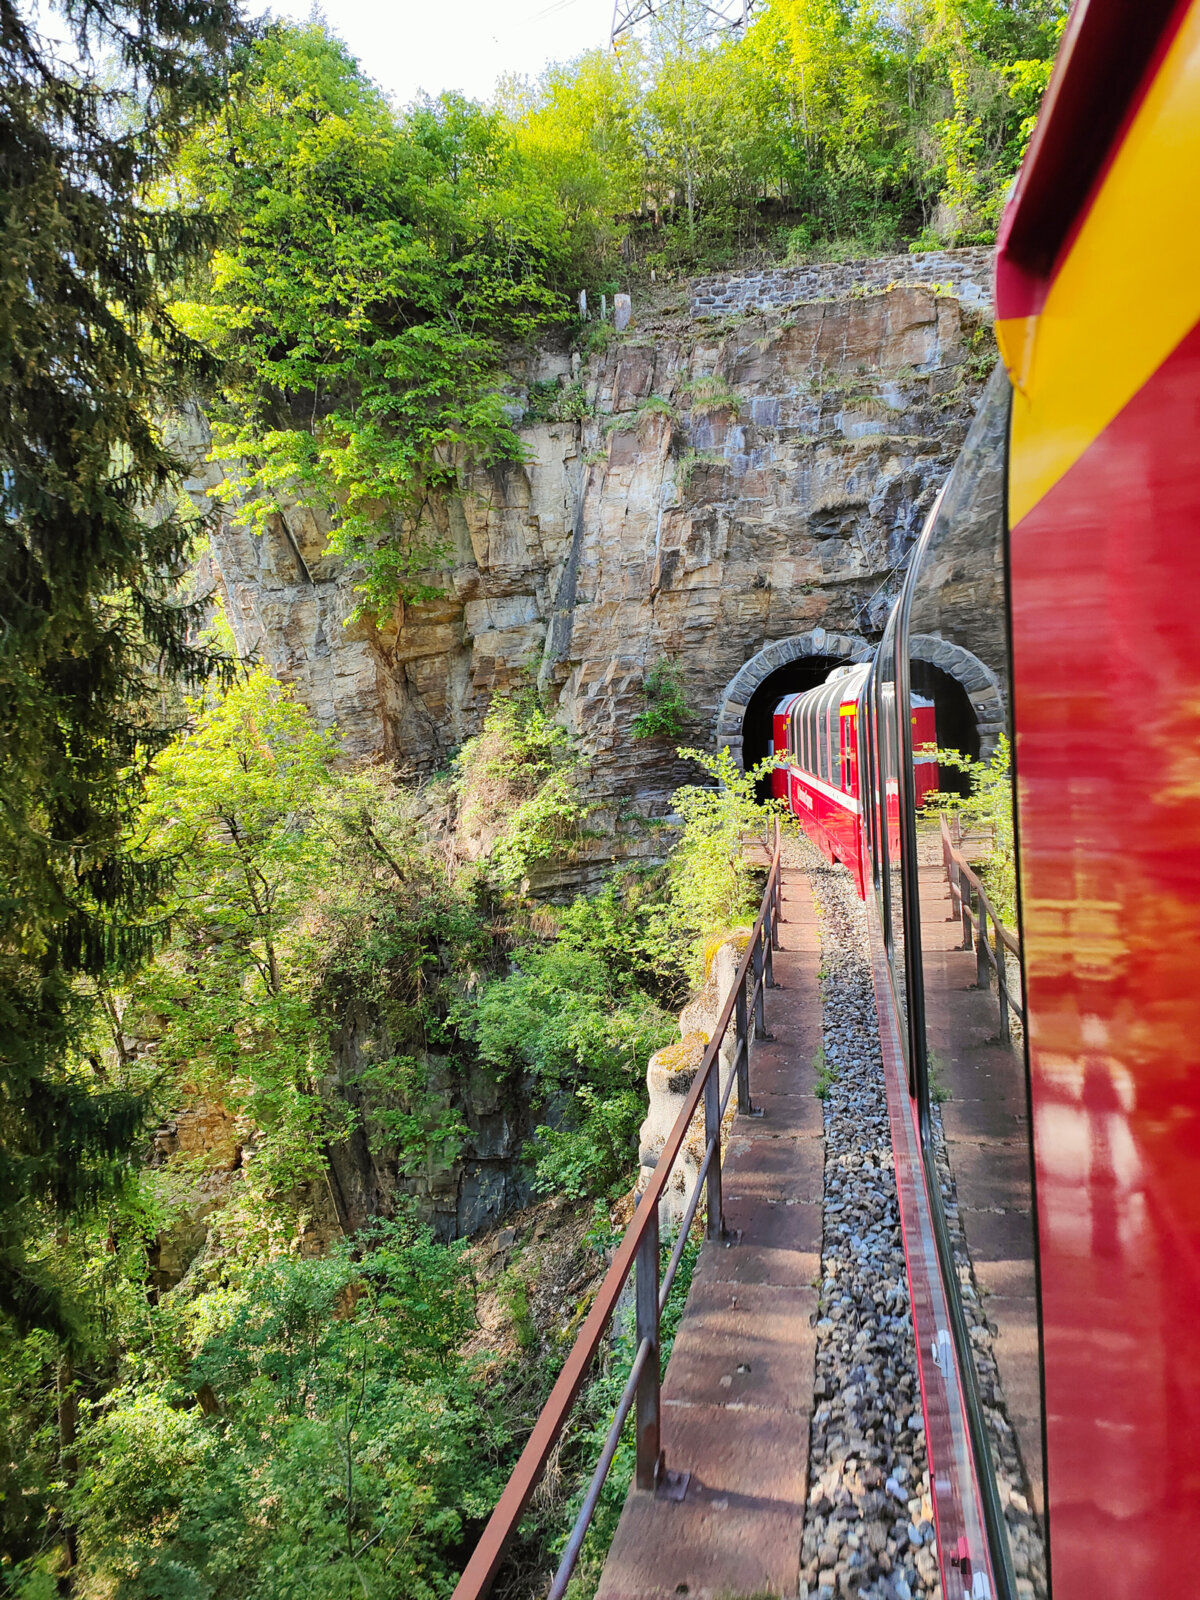 Bernina Express entering a tunnel